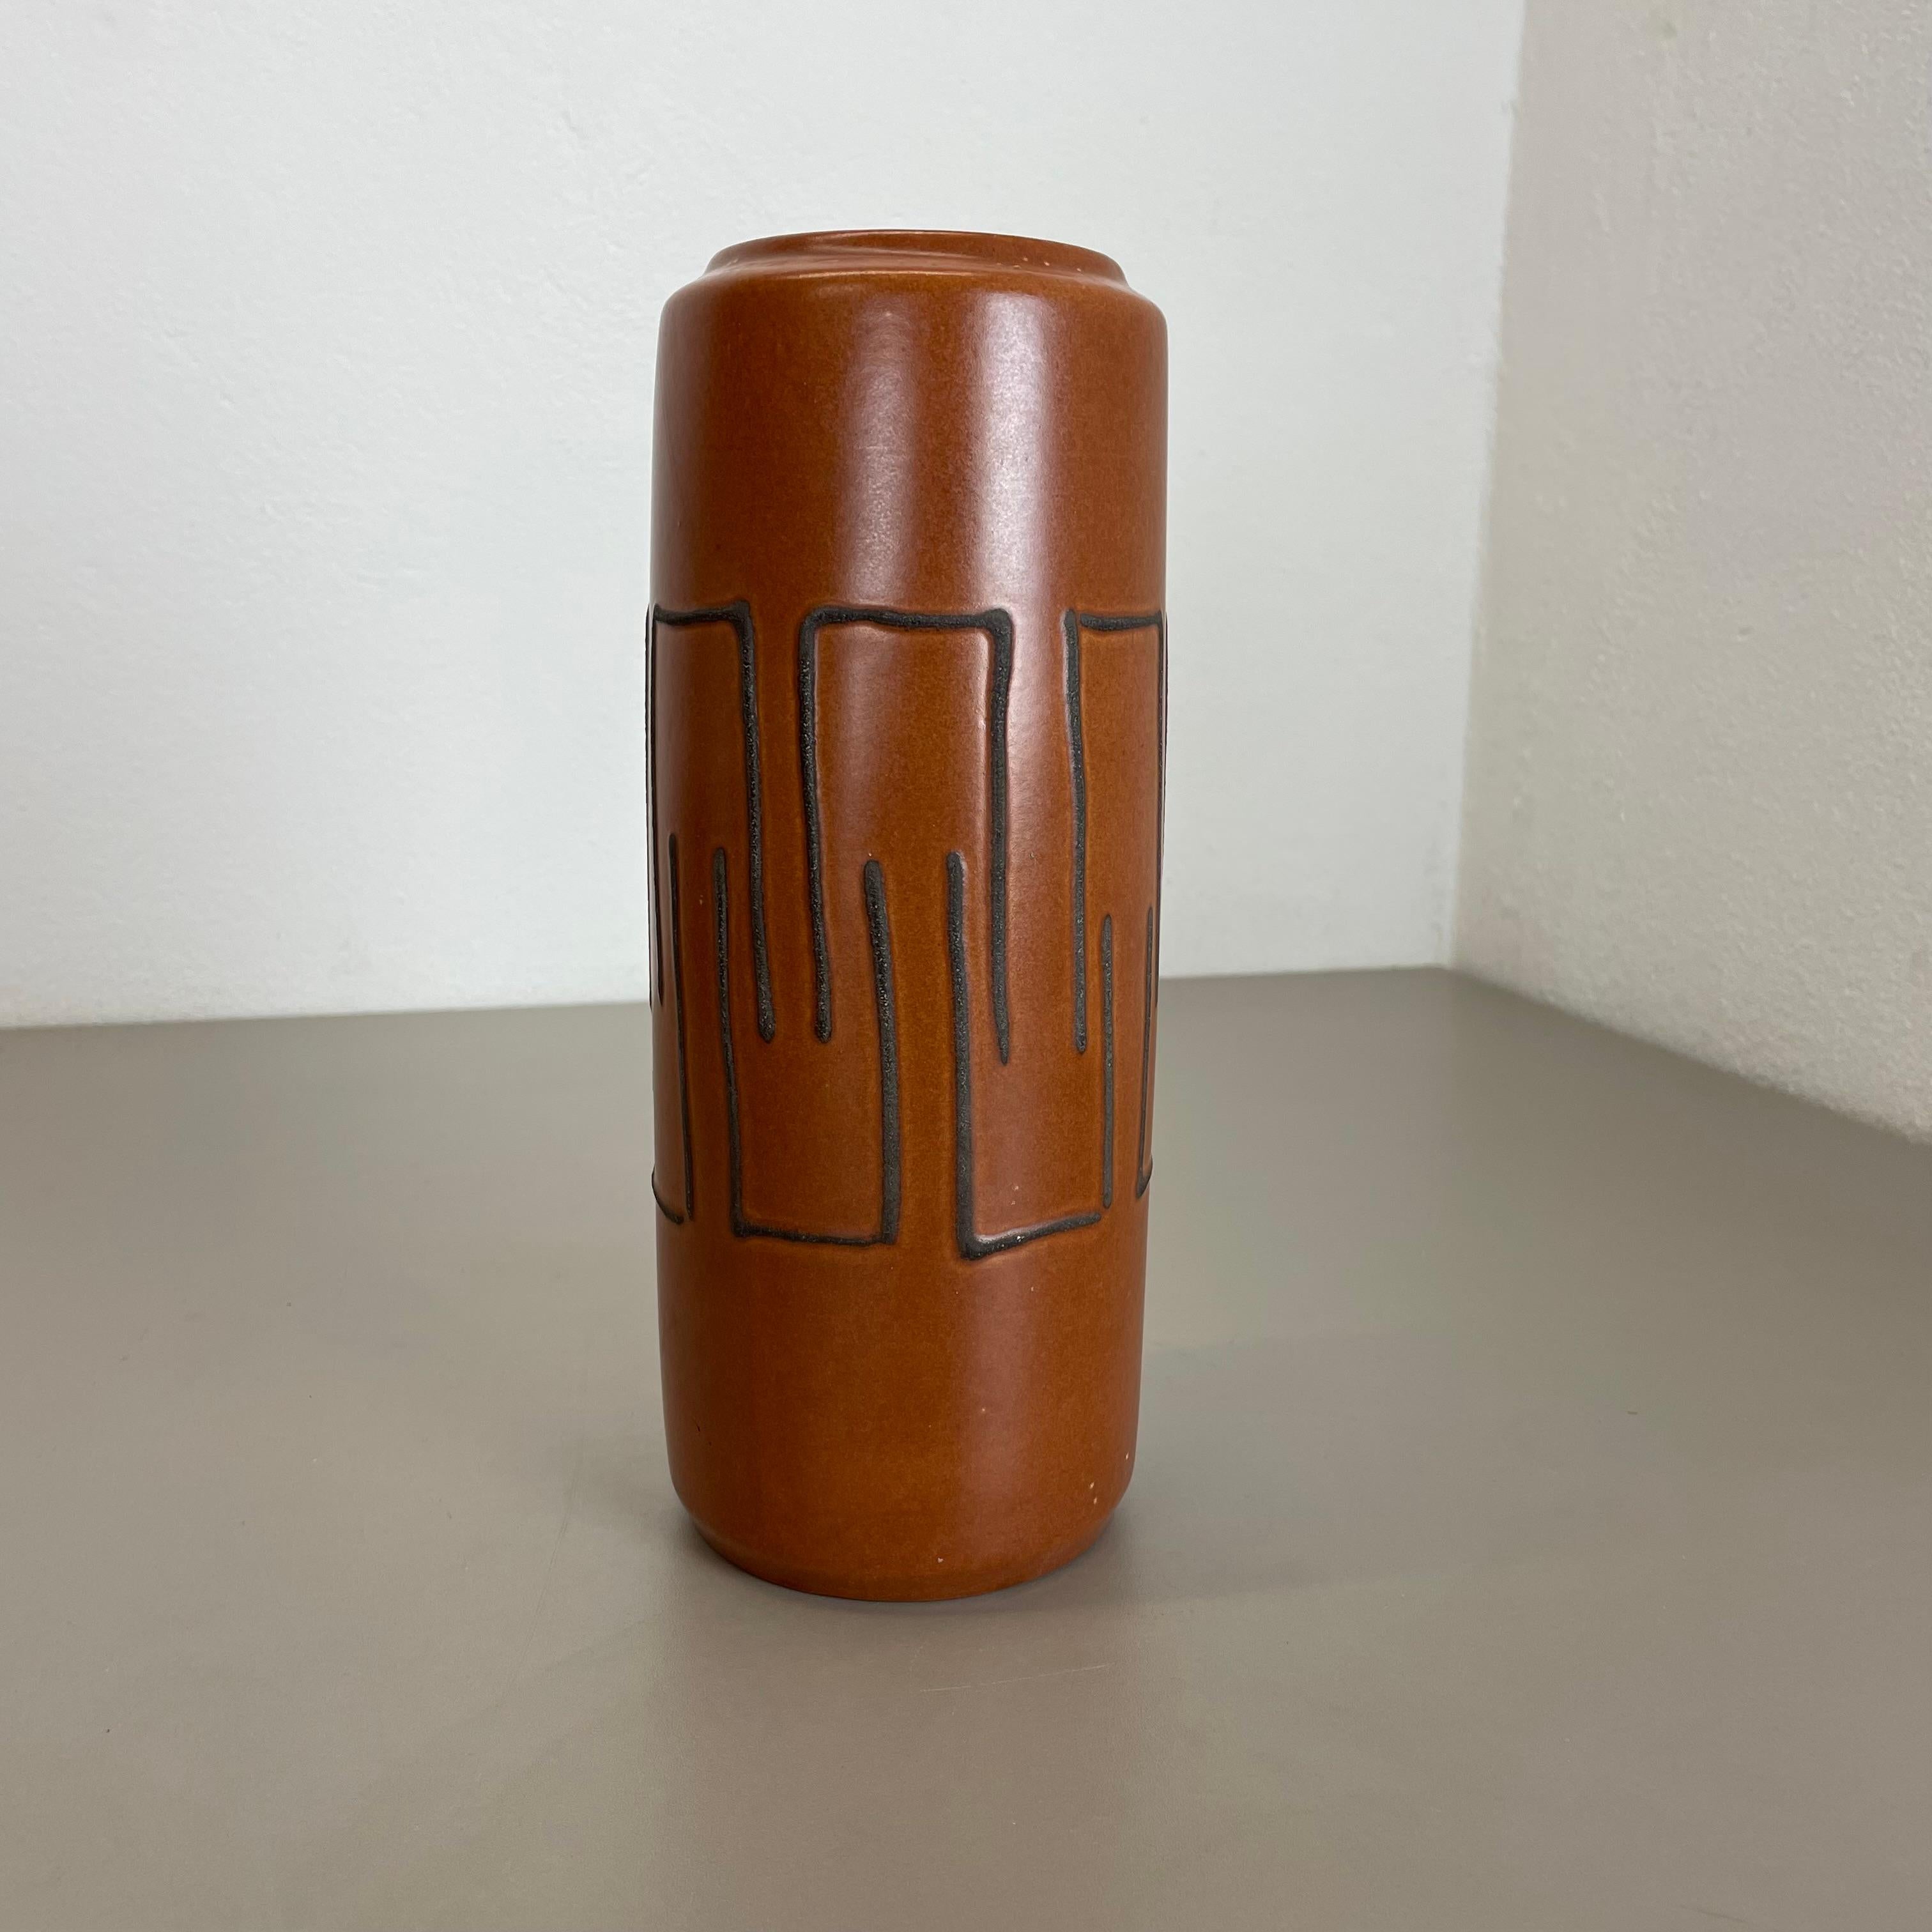 Article :

Vase d'art en lave grasse super rare marron 